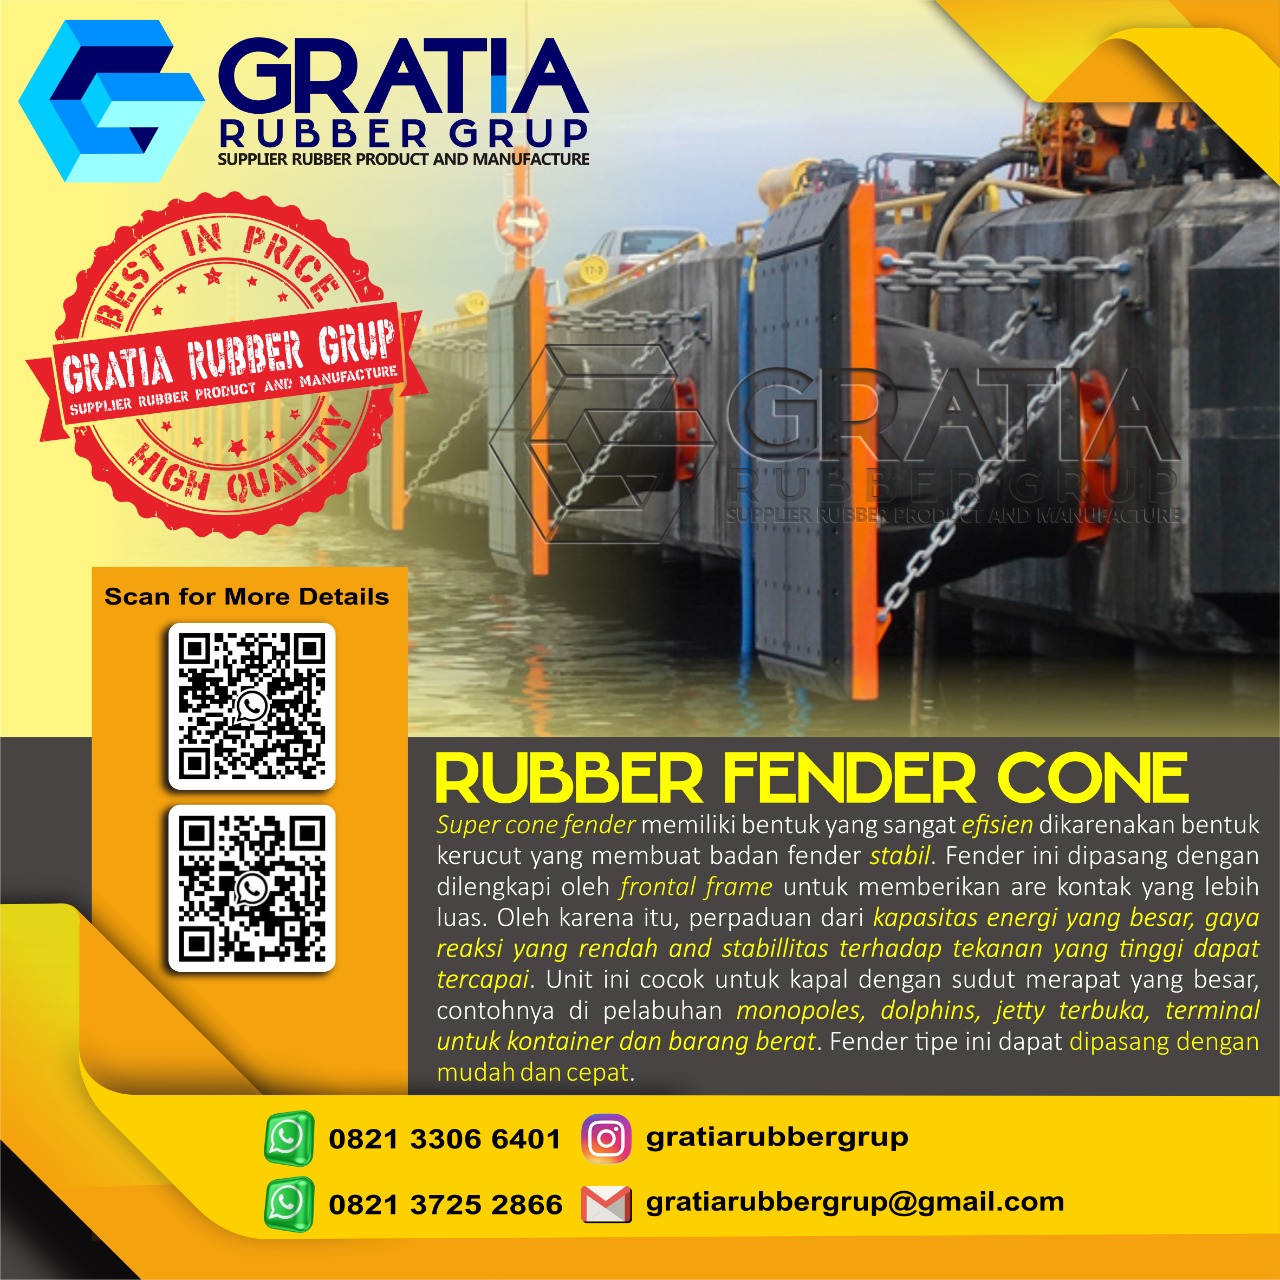 Harga Rubber Air Bag Murah Dan Berkualitas  Melayani Pengiriman Ke Prabumulih Sumatera Selatan Hub 0821 3306 0461